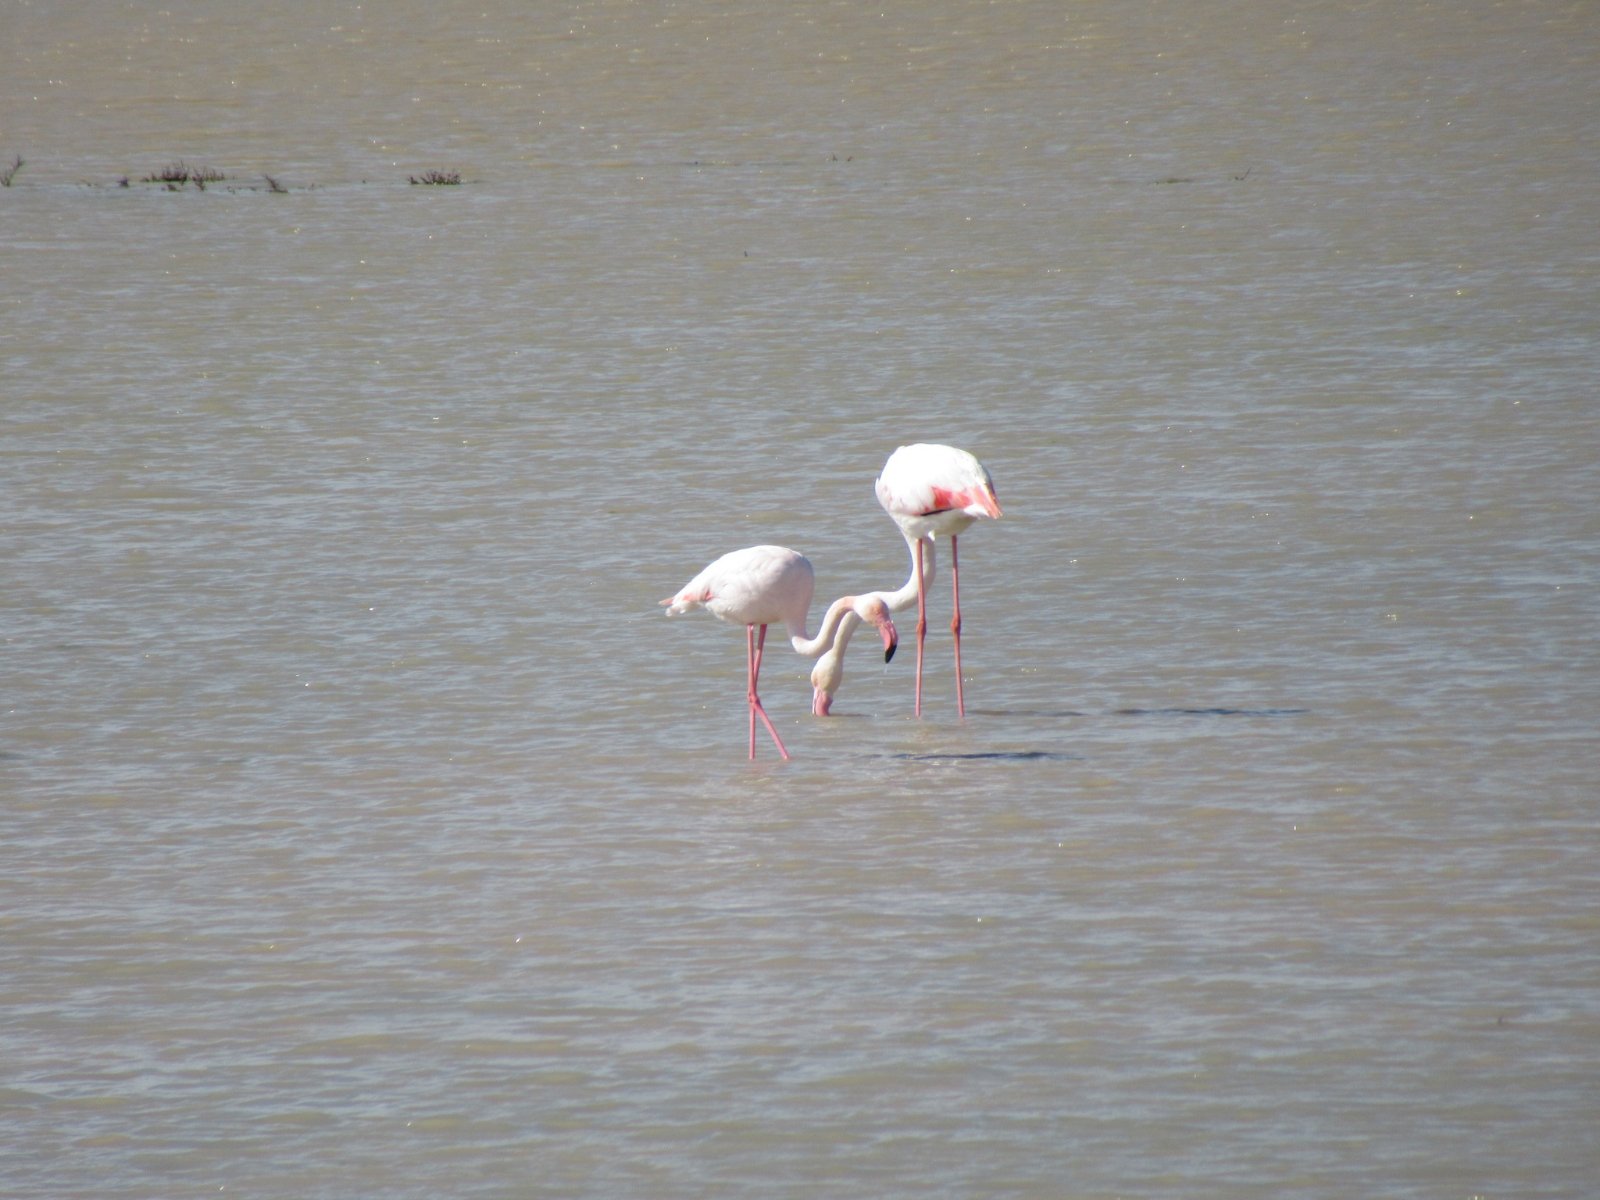 viber image 2021 02 18 18 12 58 exclusive, Paralimni Lake, Flamingo